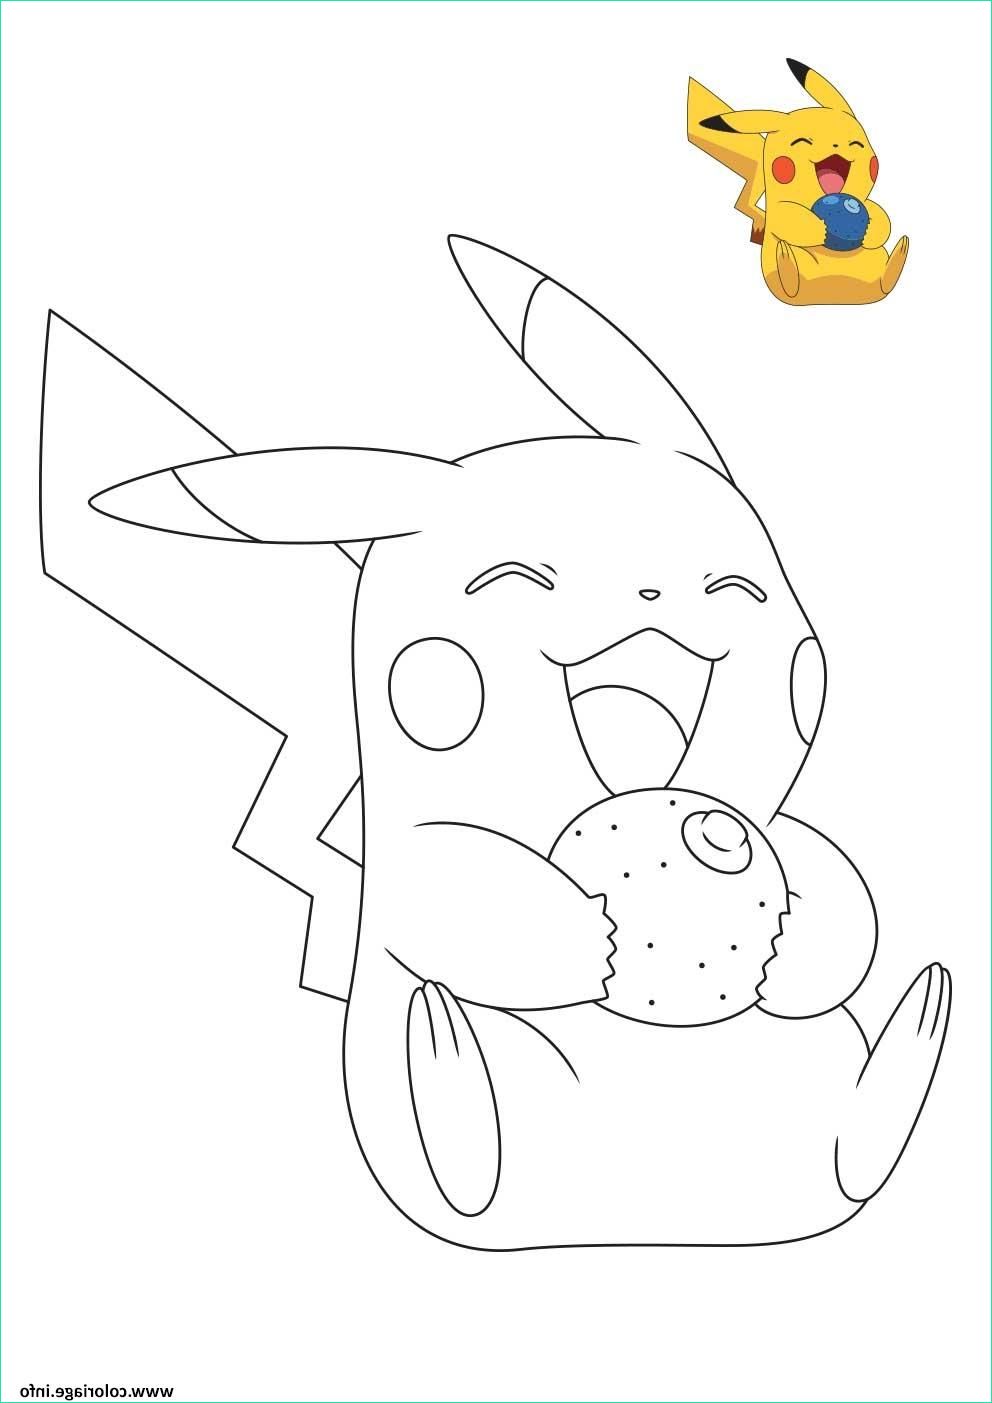 Coloriage Gratuit Pokemon Cool Photographie Coloriage Pokemon Pikachu Entrain De Rigoler Dessin